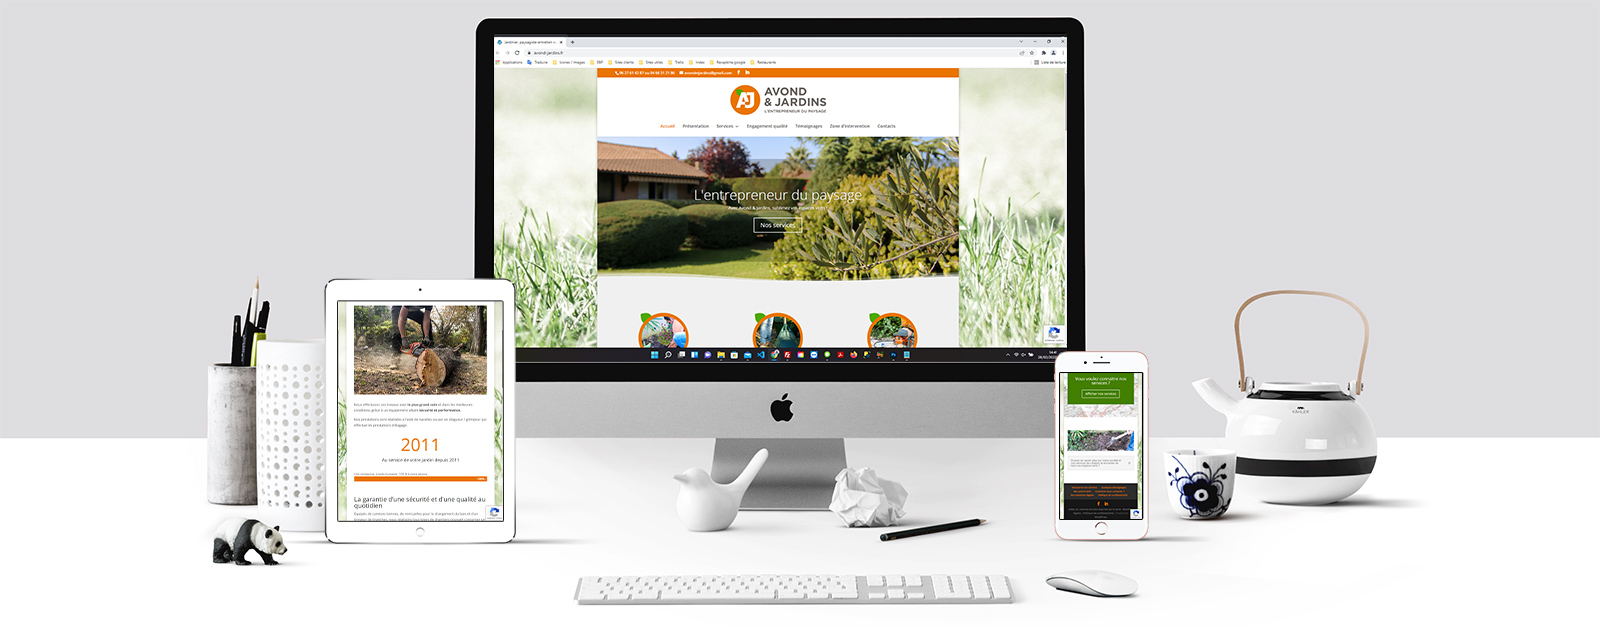 Le site de Avond & jardins sur un écran Mac, un écran de tablette et un écran d'Iphone